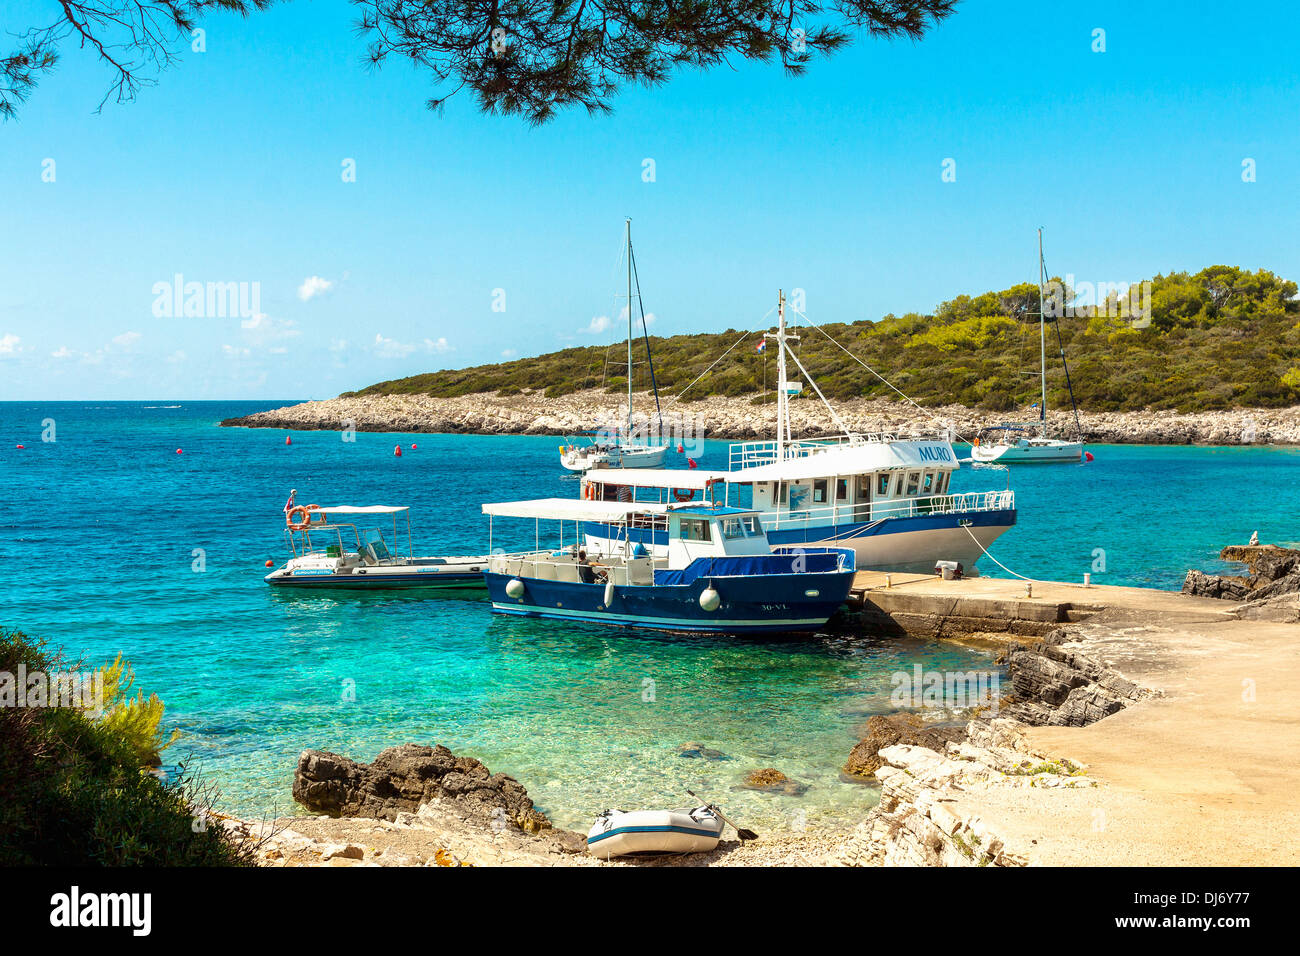 Bateaux Taxi dans petit port sur l'île de Proizd, Croatie Banque D'Images